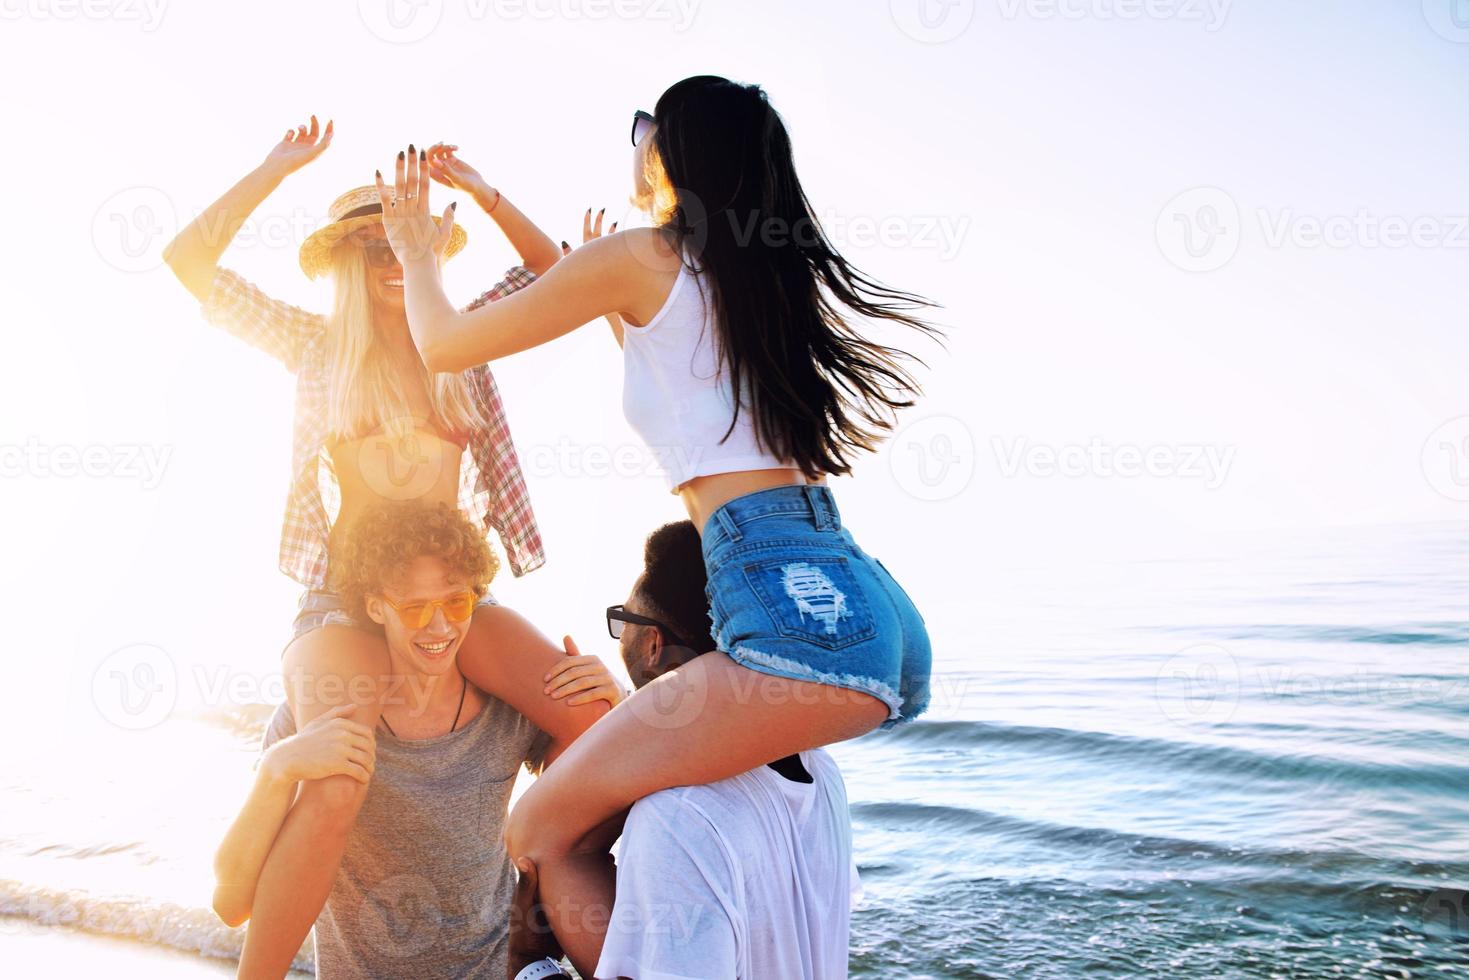 content souriant des couples en jouant à le plage photo